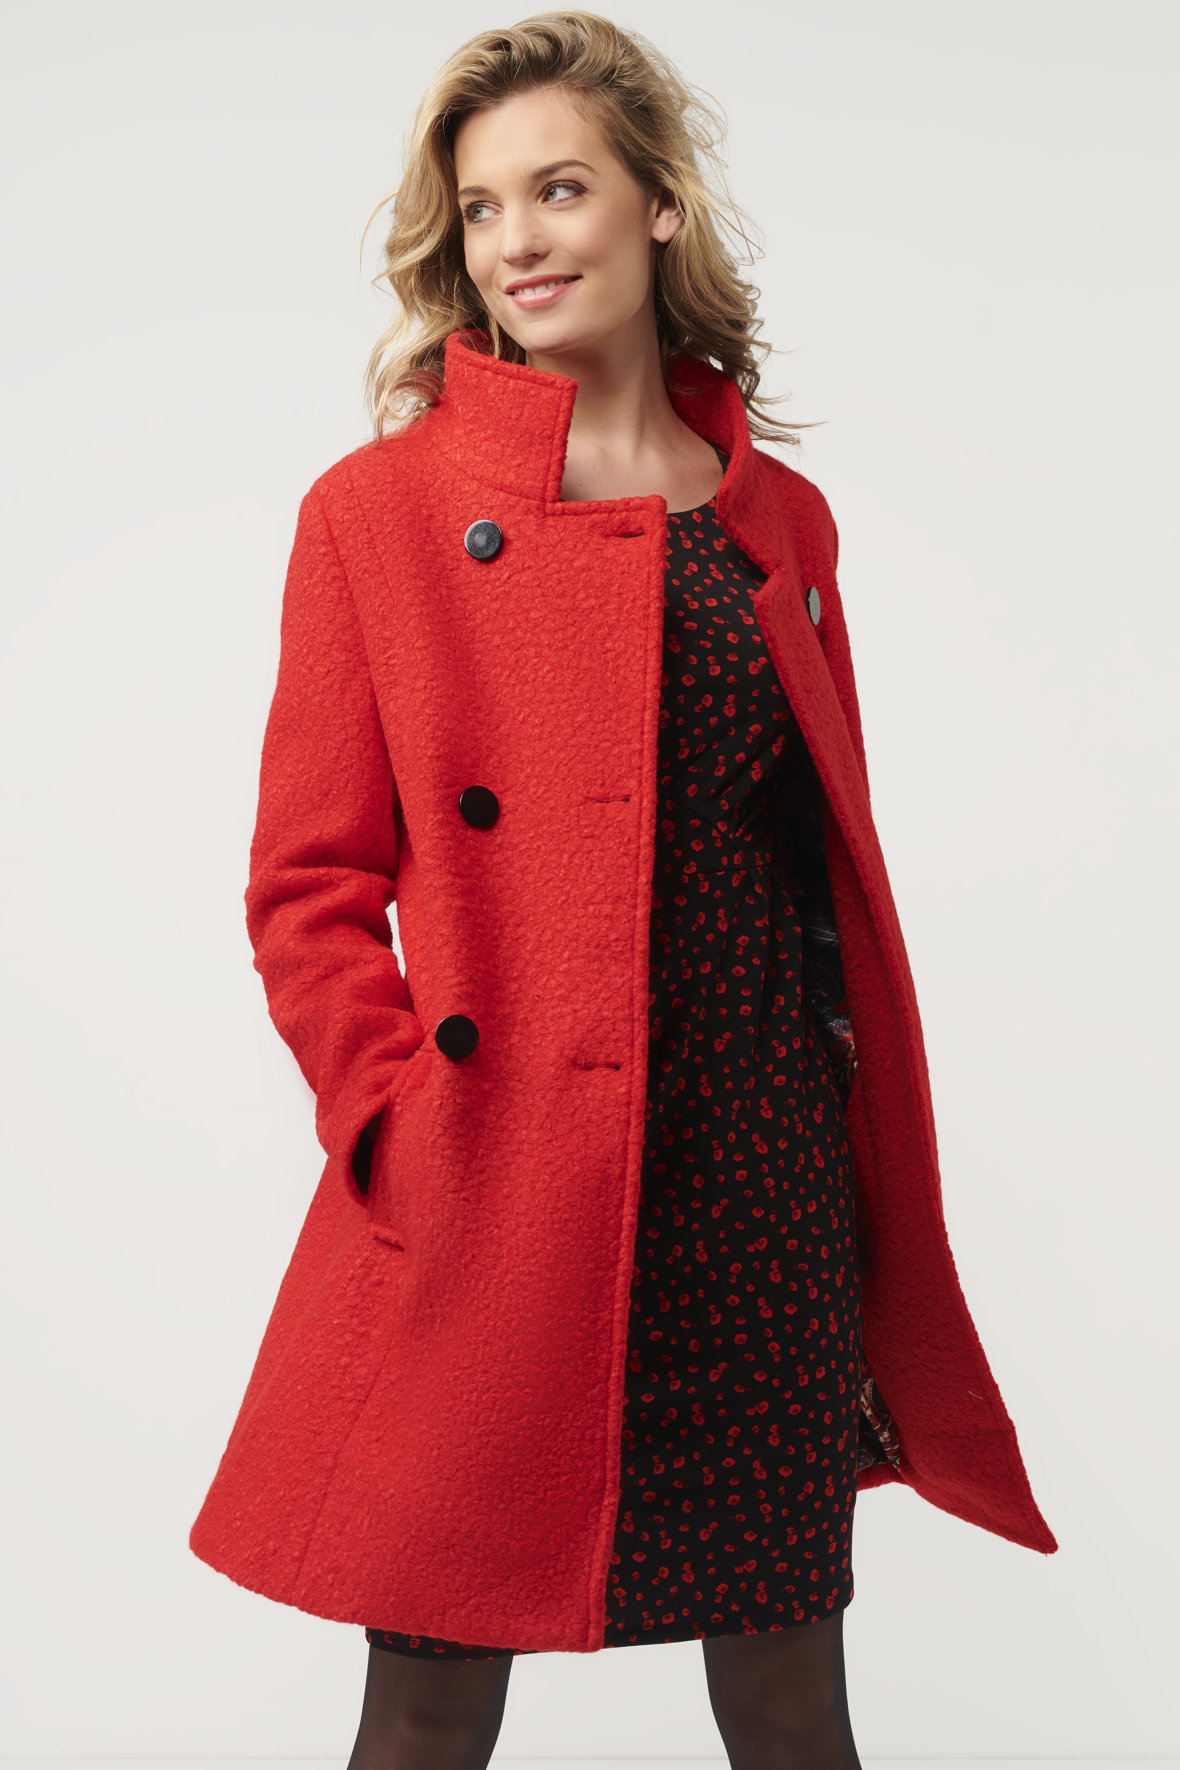 Smashed - knald rød frakke med sorte knapper - dame - Hos Lohse